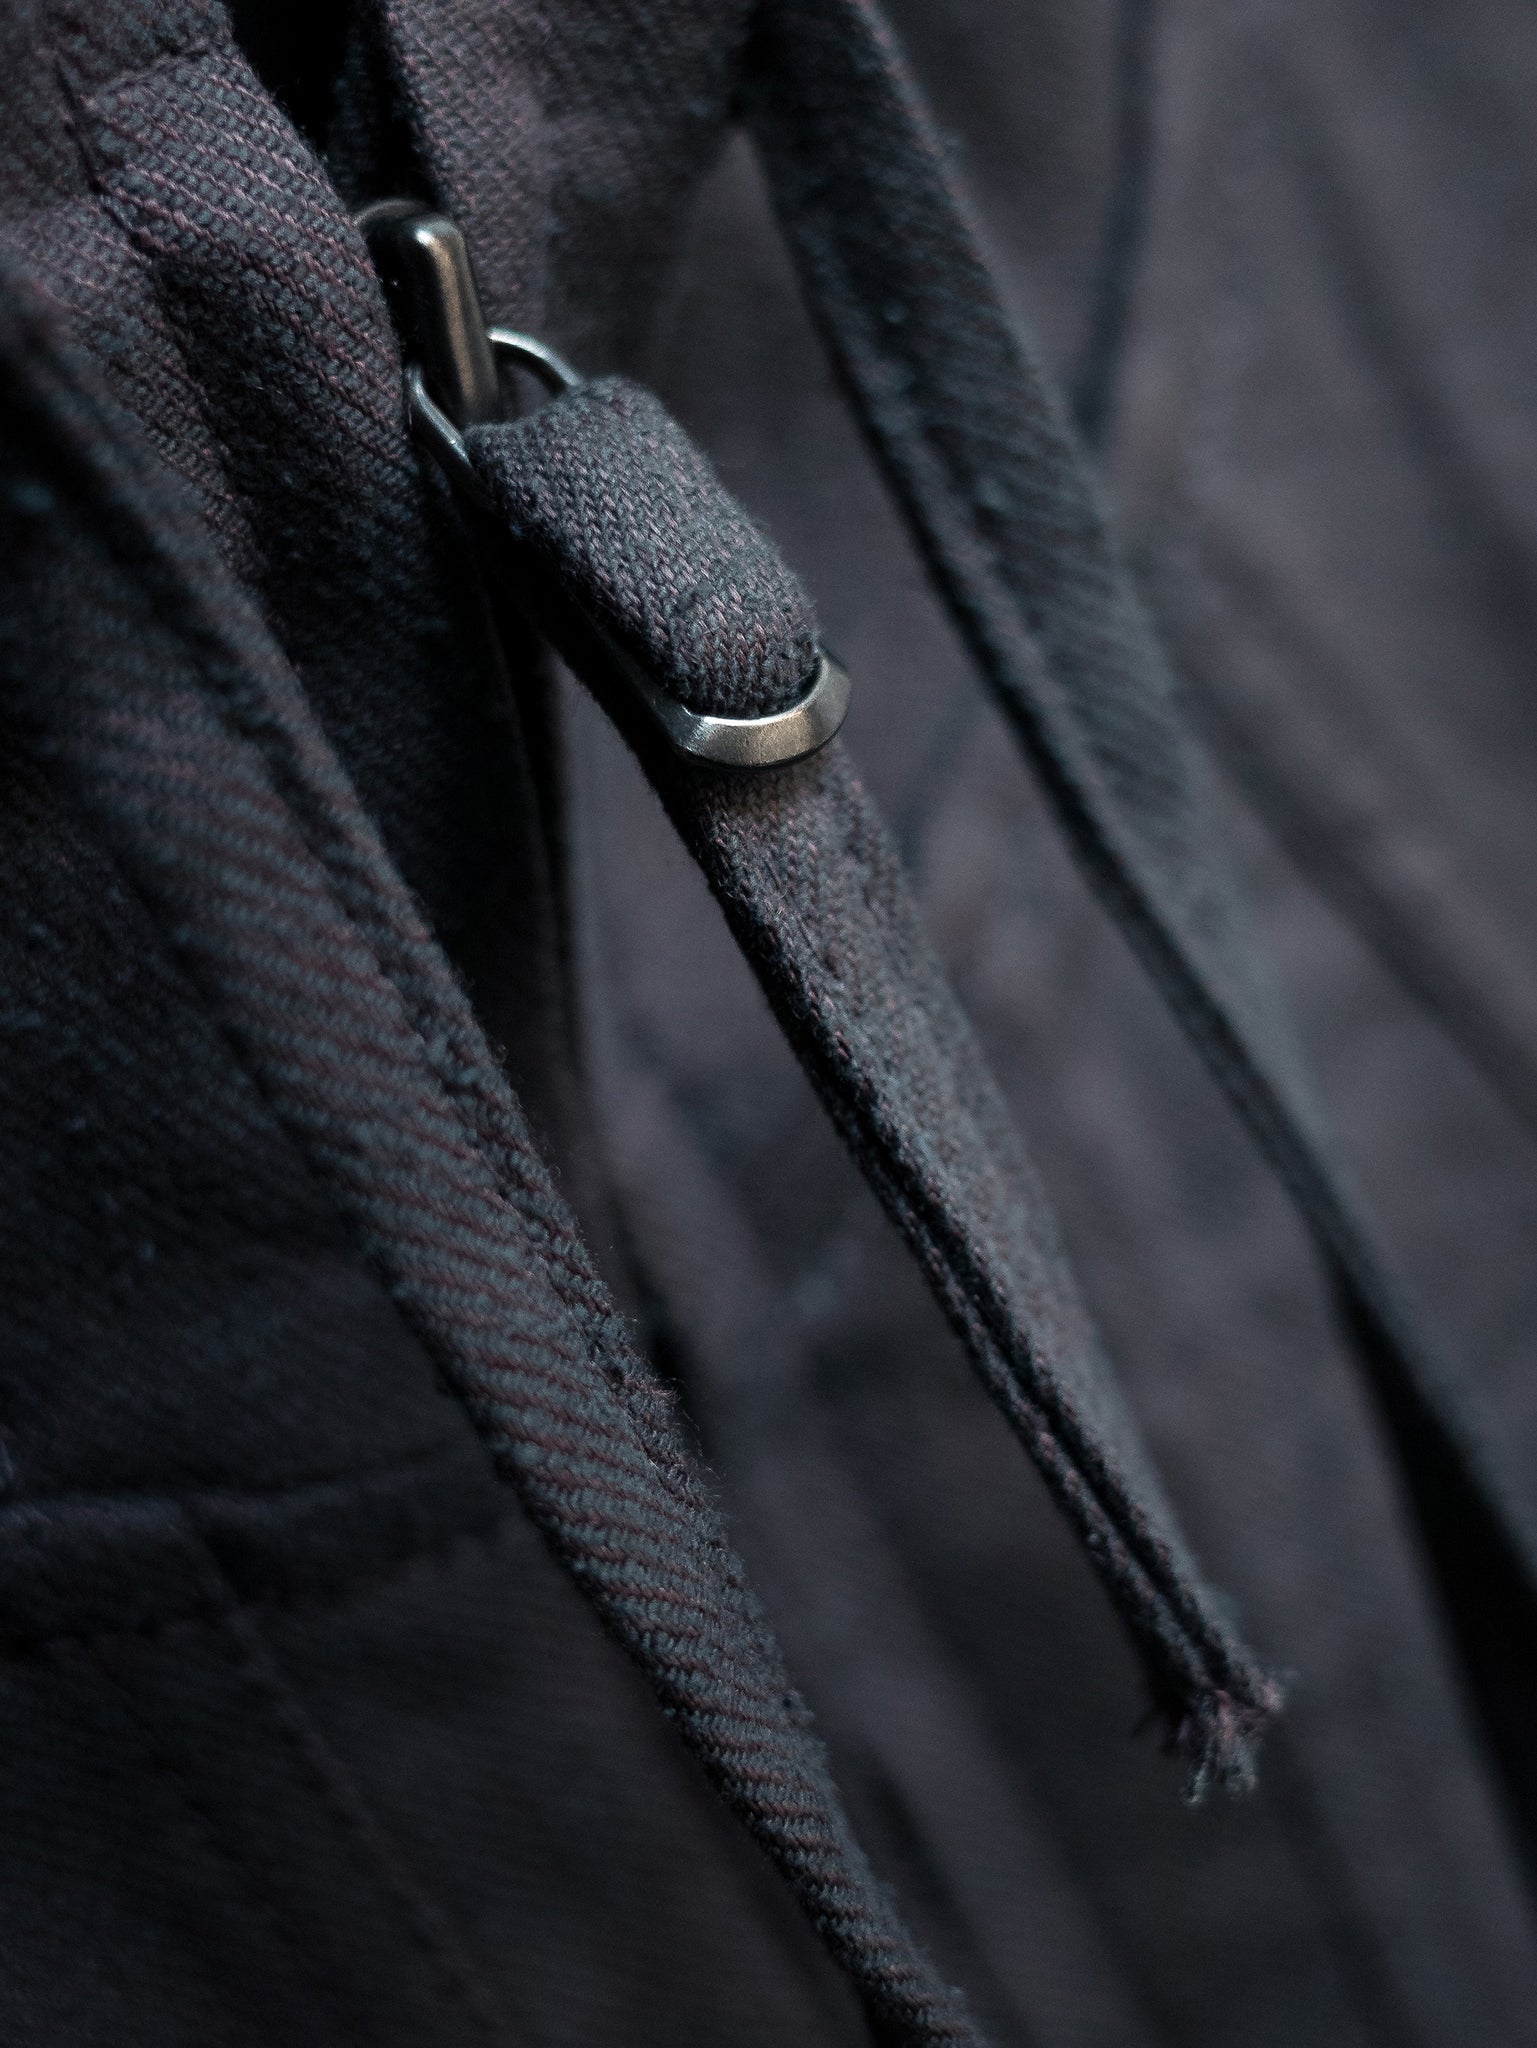 blackmerle 221 hooded jacket detail